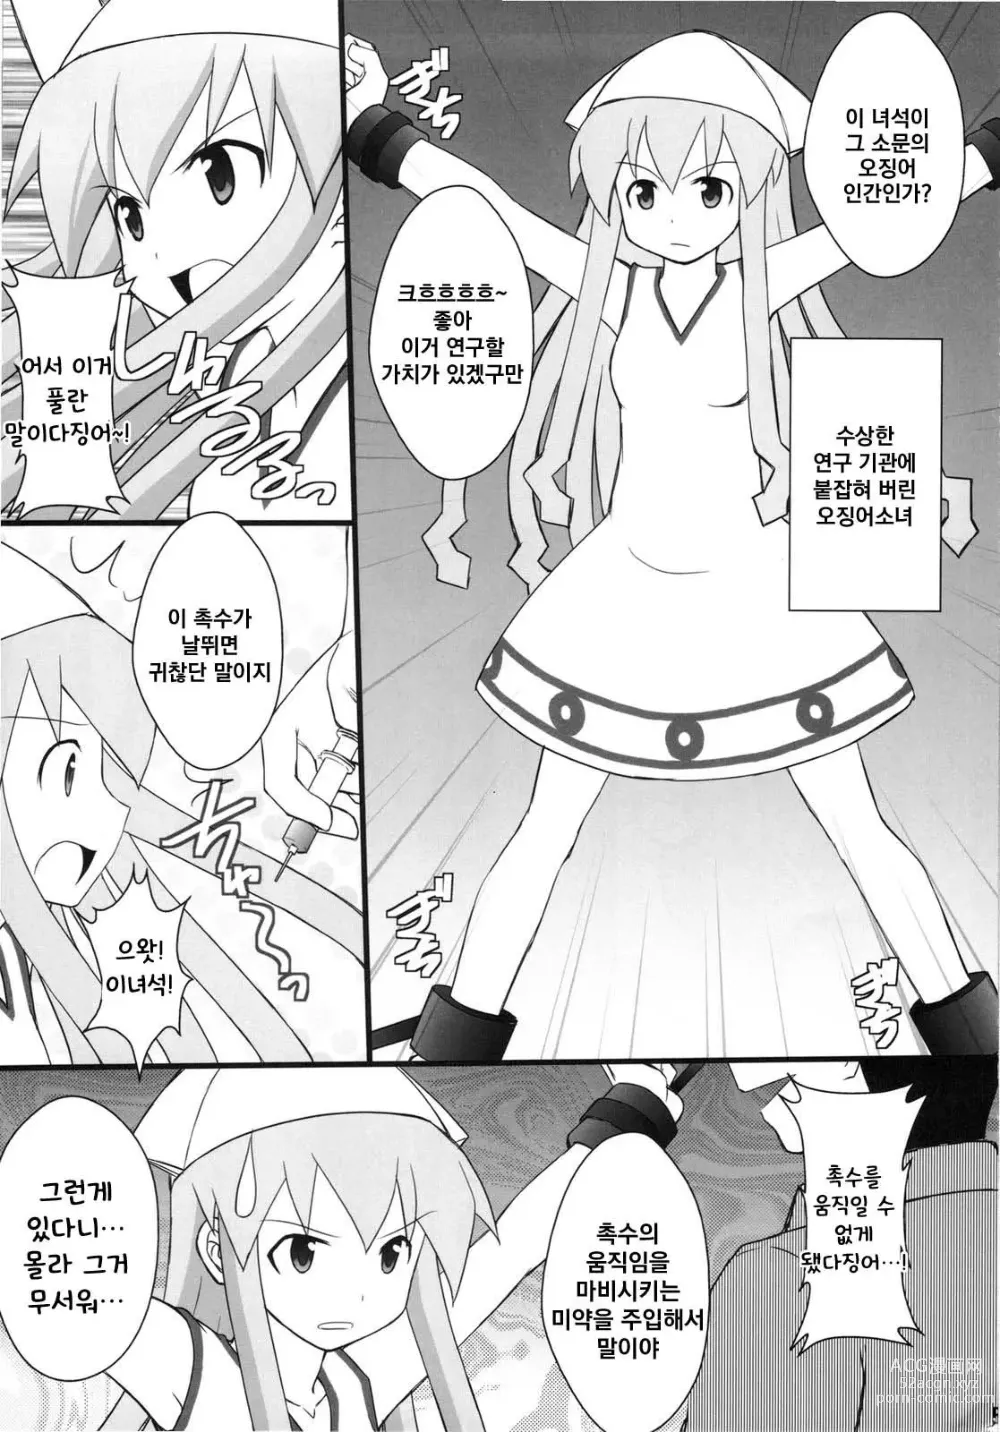 Page 3 of doujinshi 정신붕괴 할 때까지 간지럽히고 능욕해보는 테스트 4 오징어 소녀 하지 않겠는가